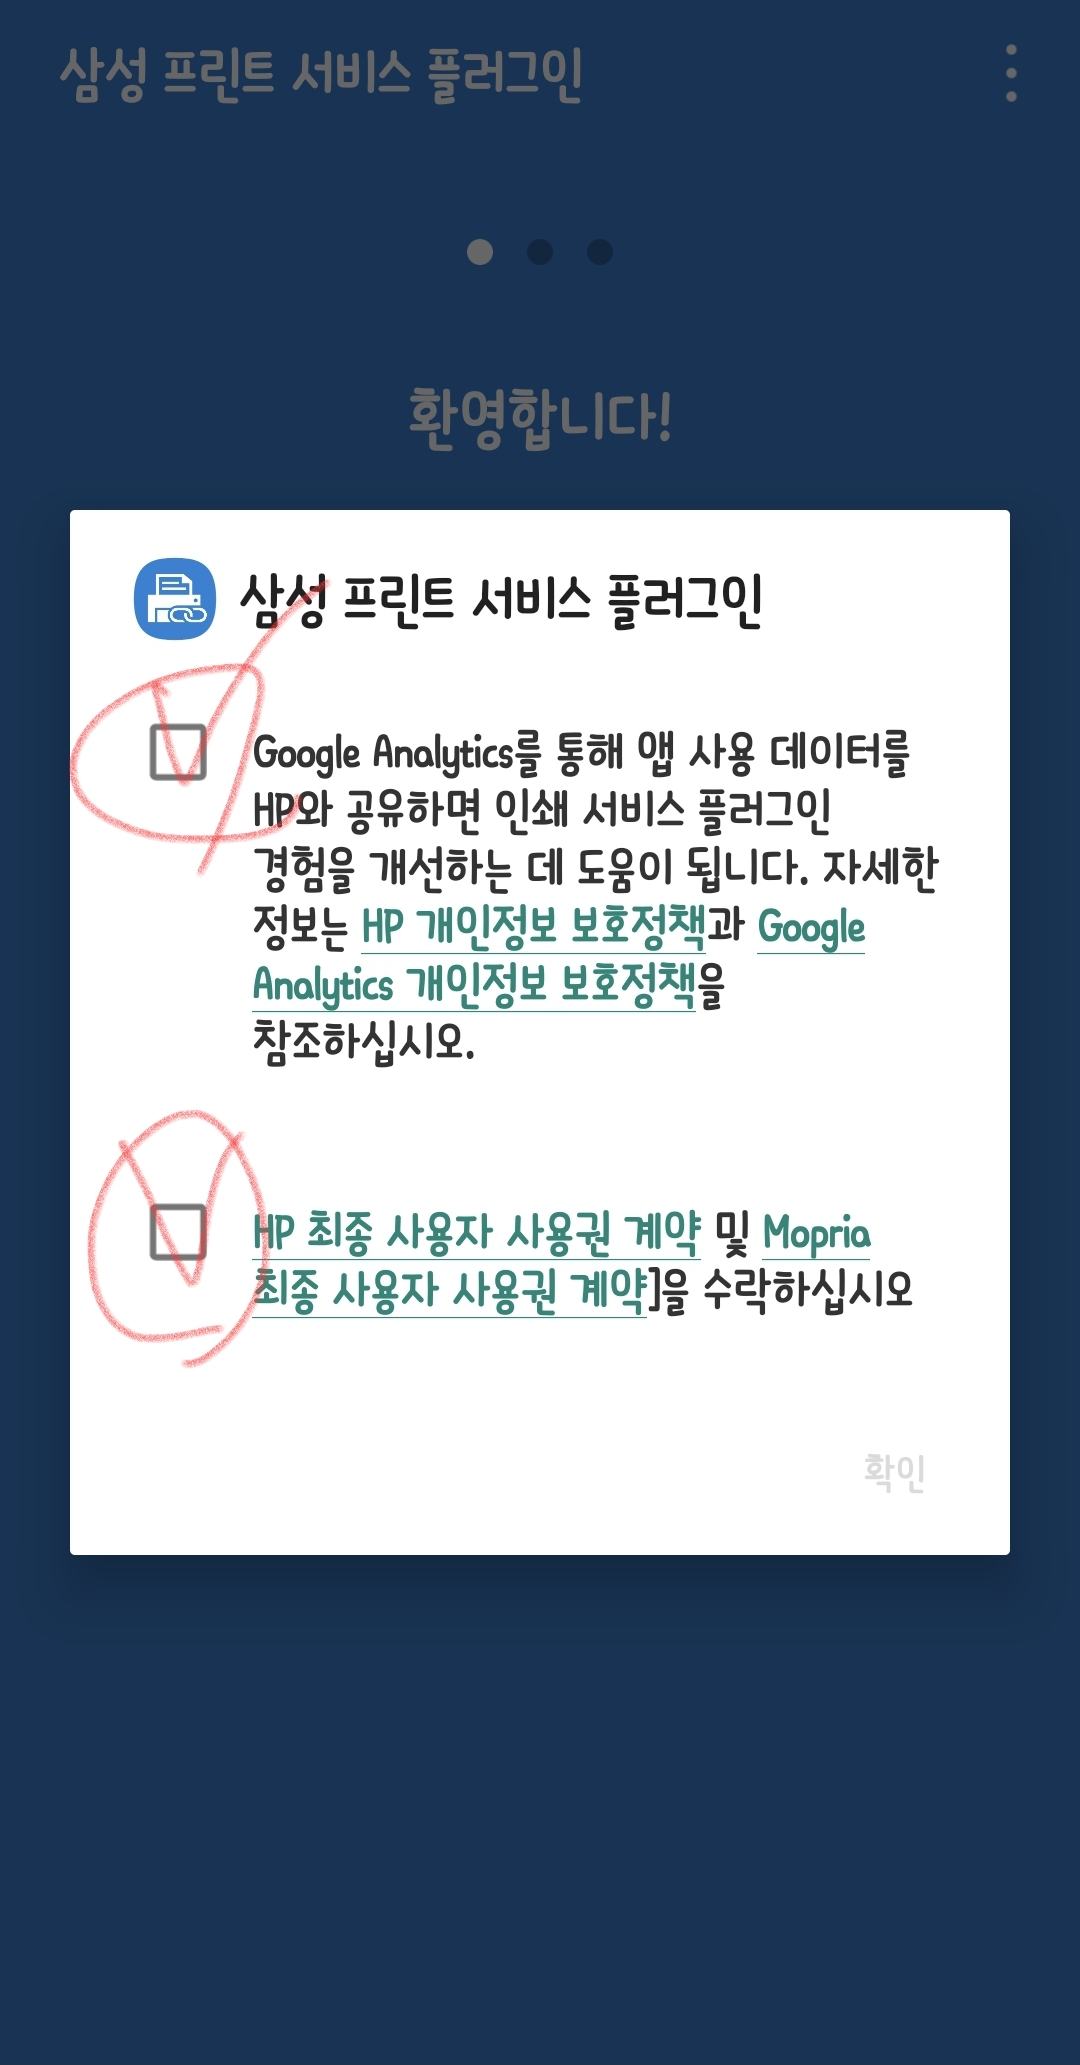 삼성 프린트 서비스 플러그인 권한을 수락하는 선택을 하고 확인